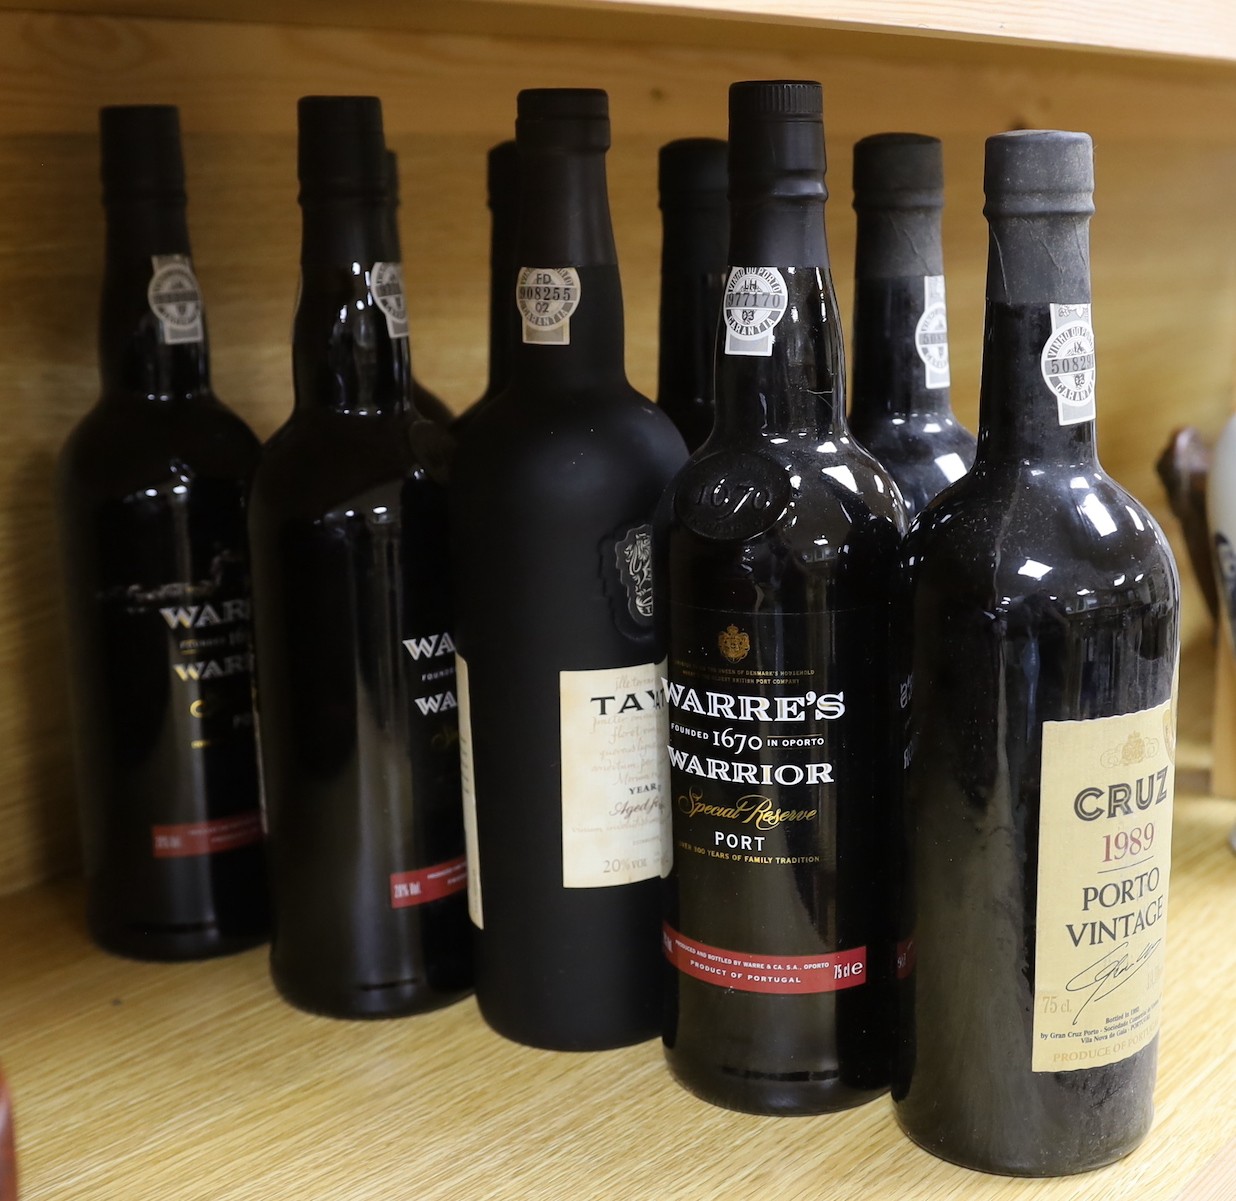 5 bottles of Cruz Porto vintage 1989, 3 bottles of Warres Warrior Special Reserve port and a - Image 2 of 2